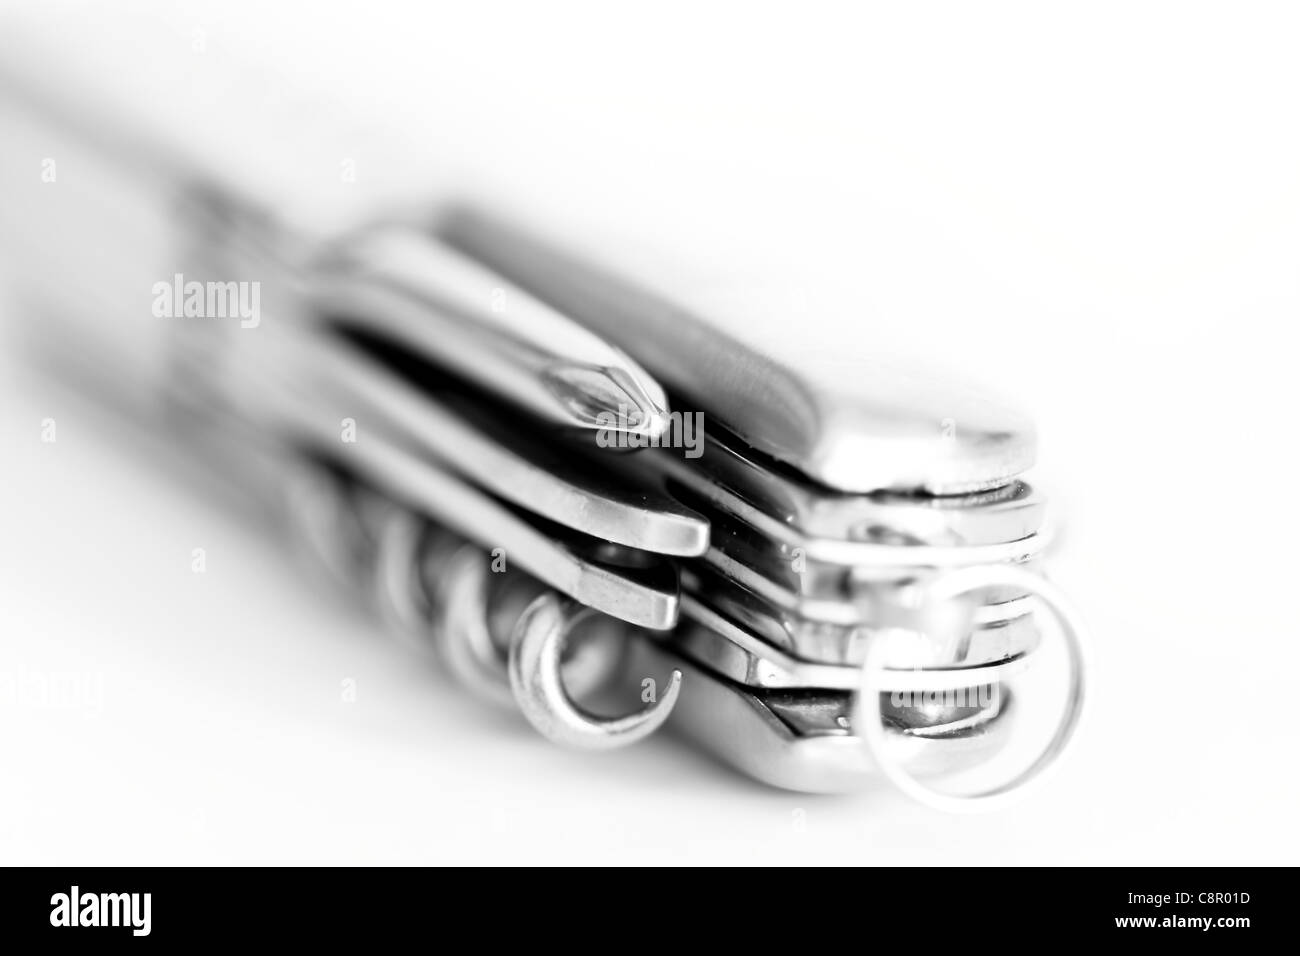 pocket knife folded on white background Stock Photo